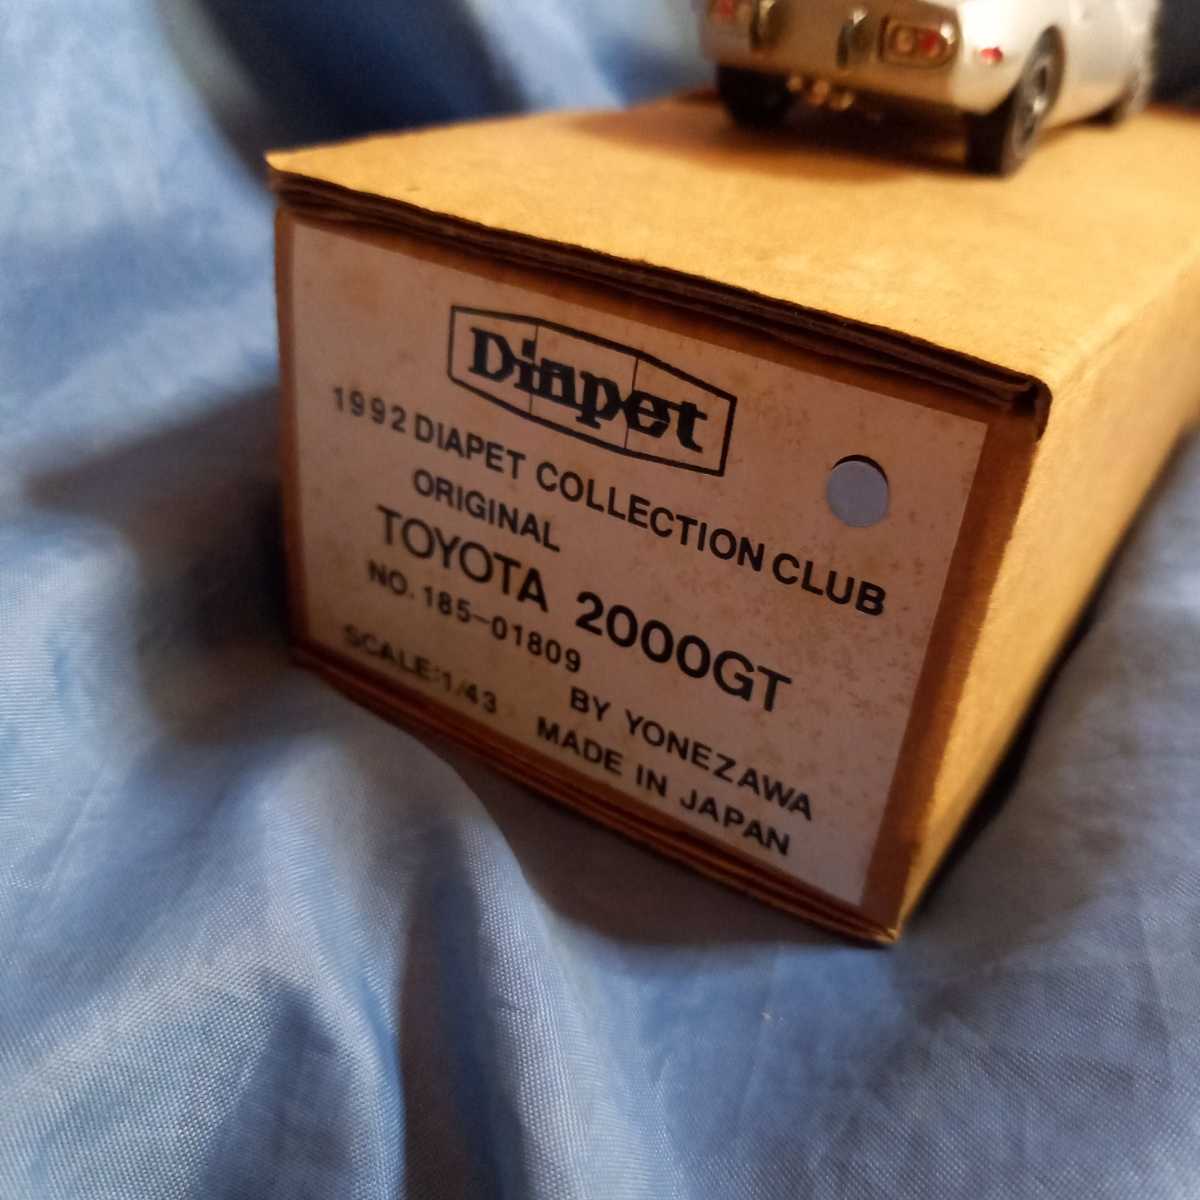 ダイヤペット 1992 DIAPET COLLECTION CLUB ORIGINAL BY YONEZAWA 日本製 トヨタ 2000GT シルバー_画像7